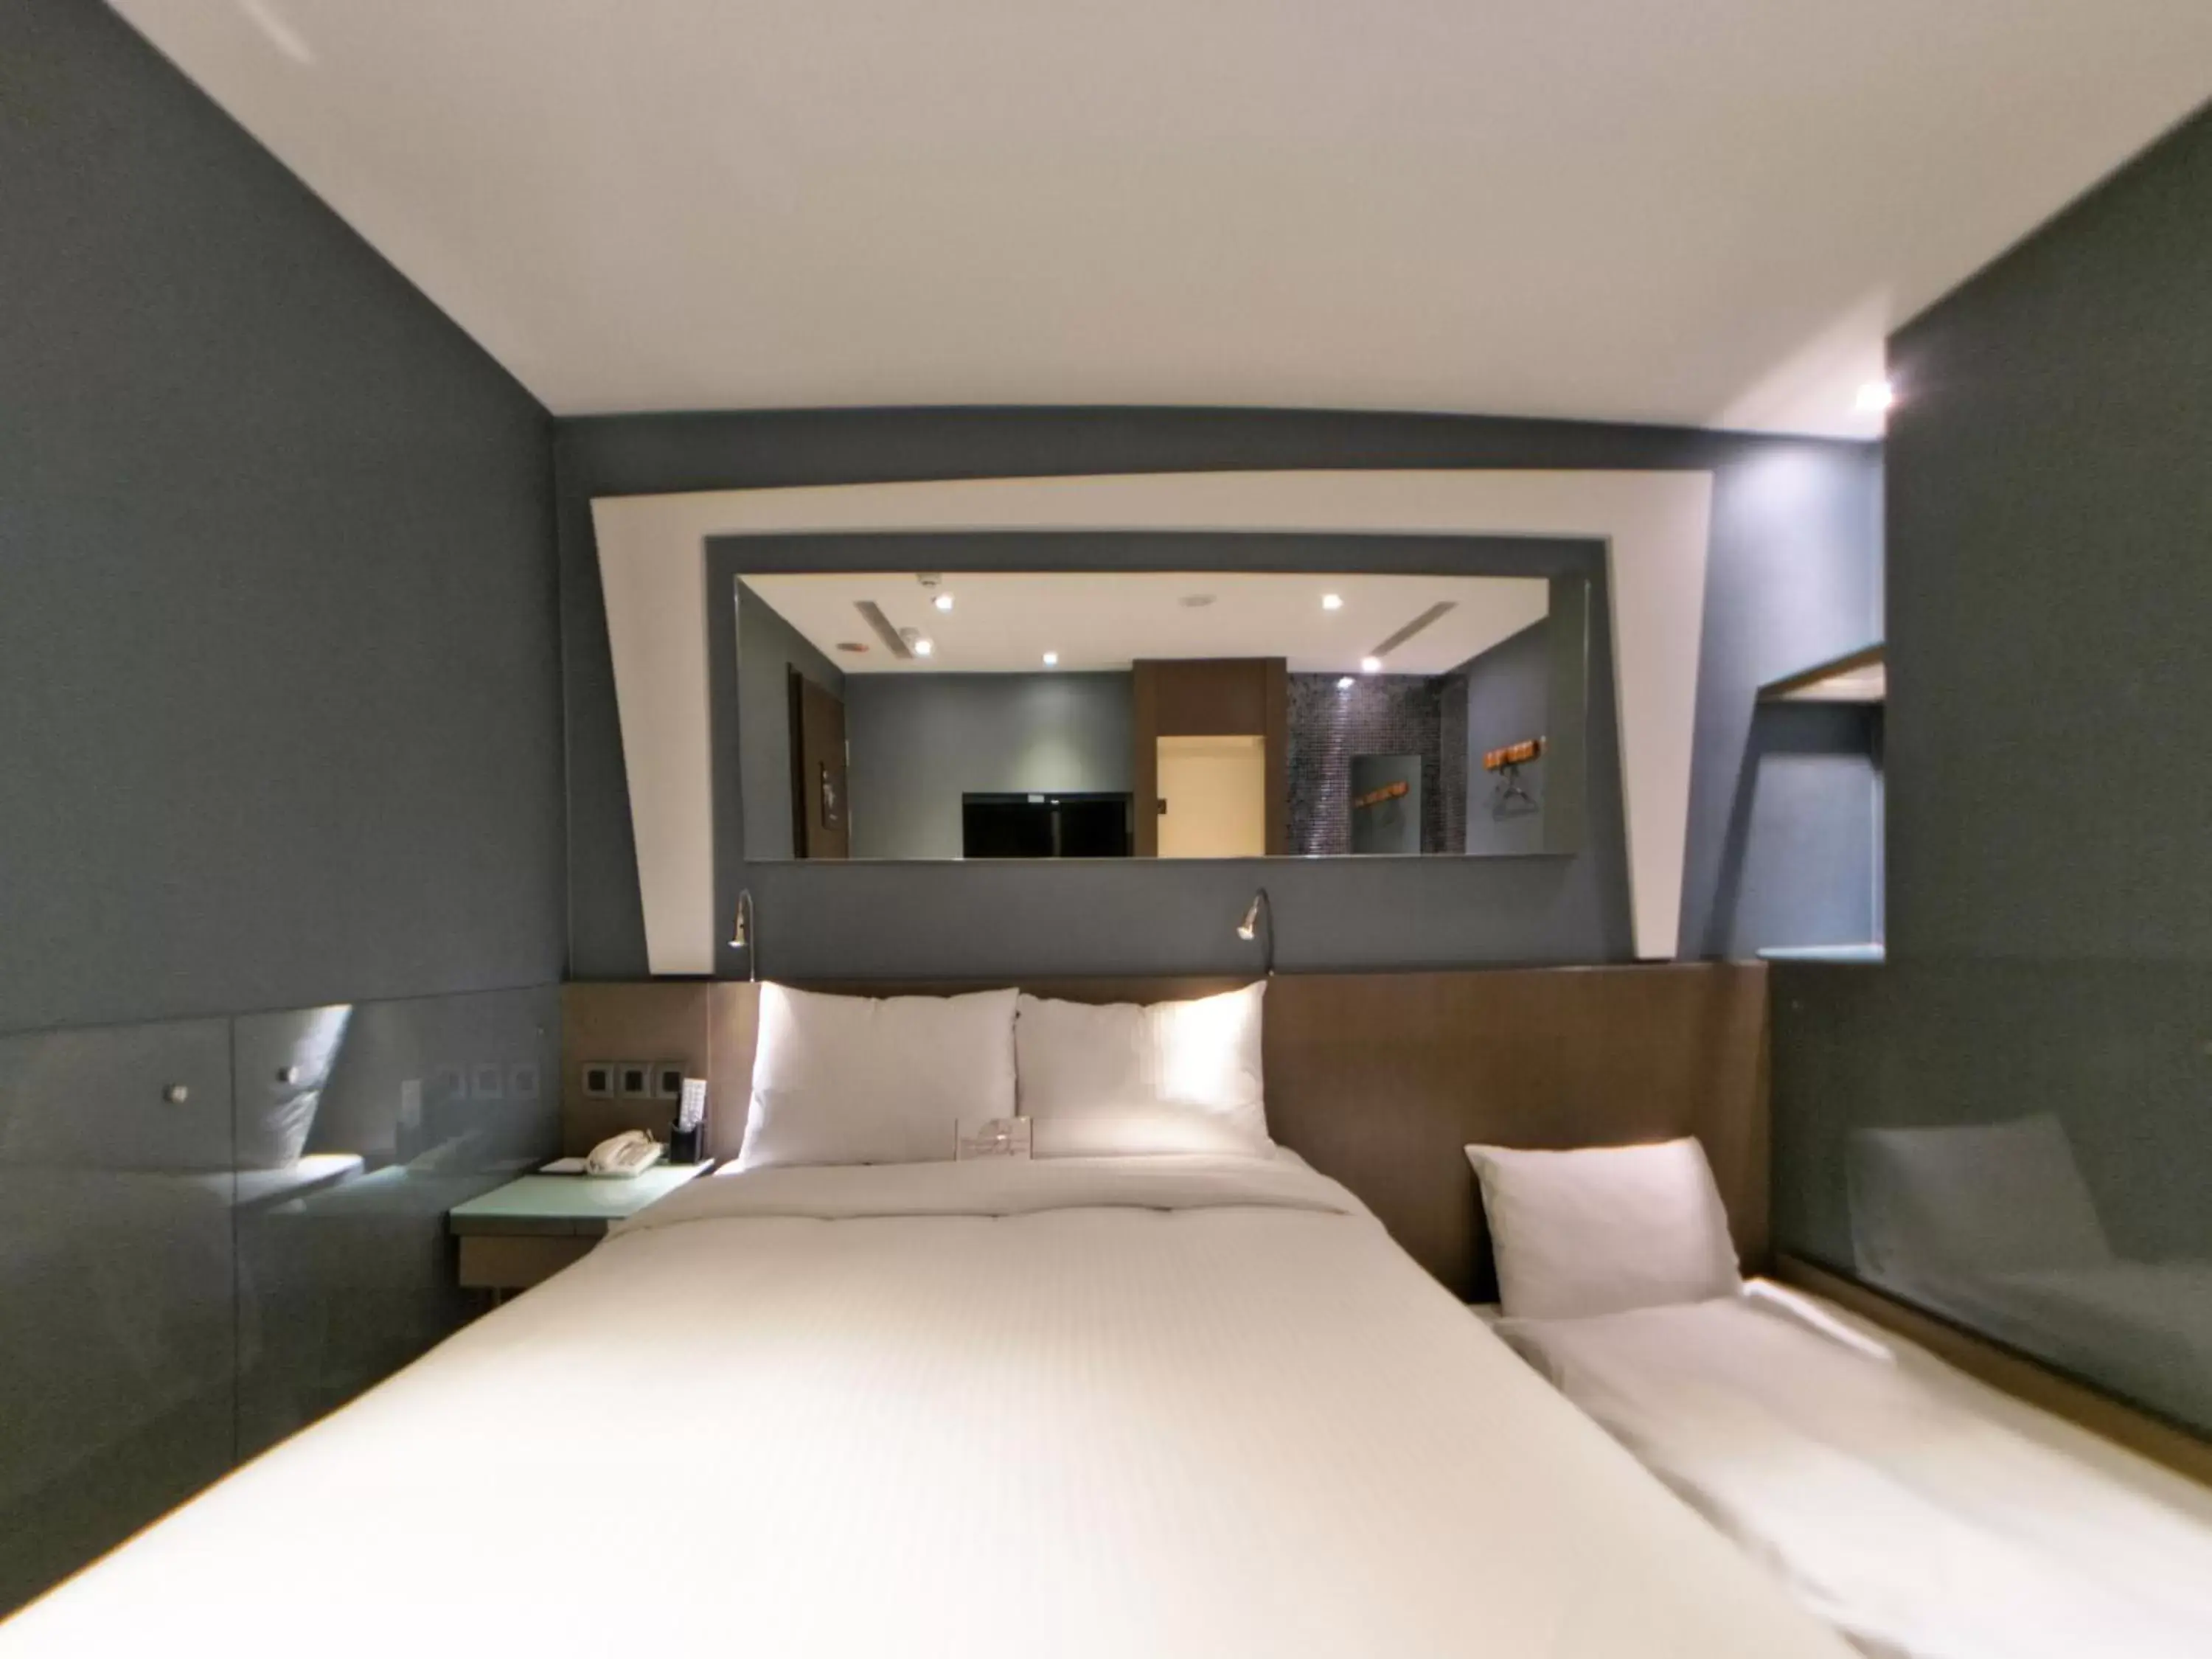 Bedroom in Beauty Hotels Taipei - Hotel B6